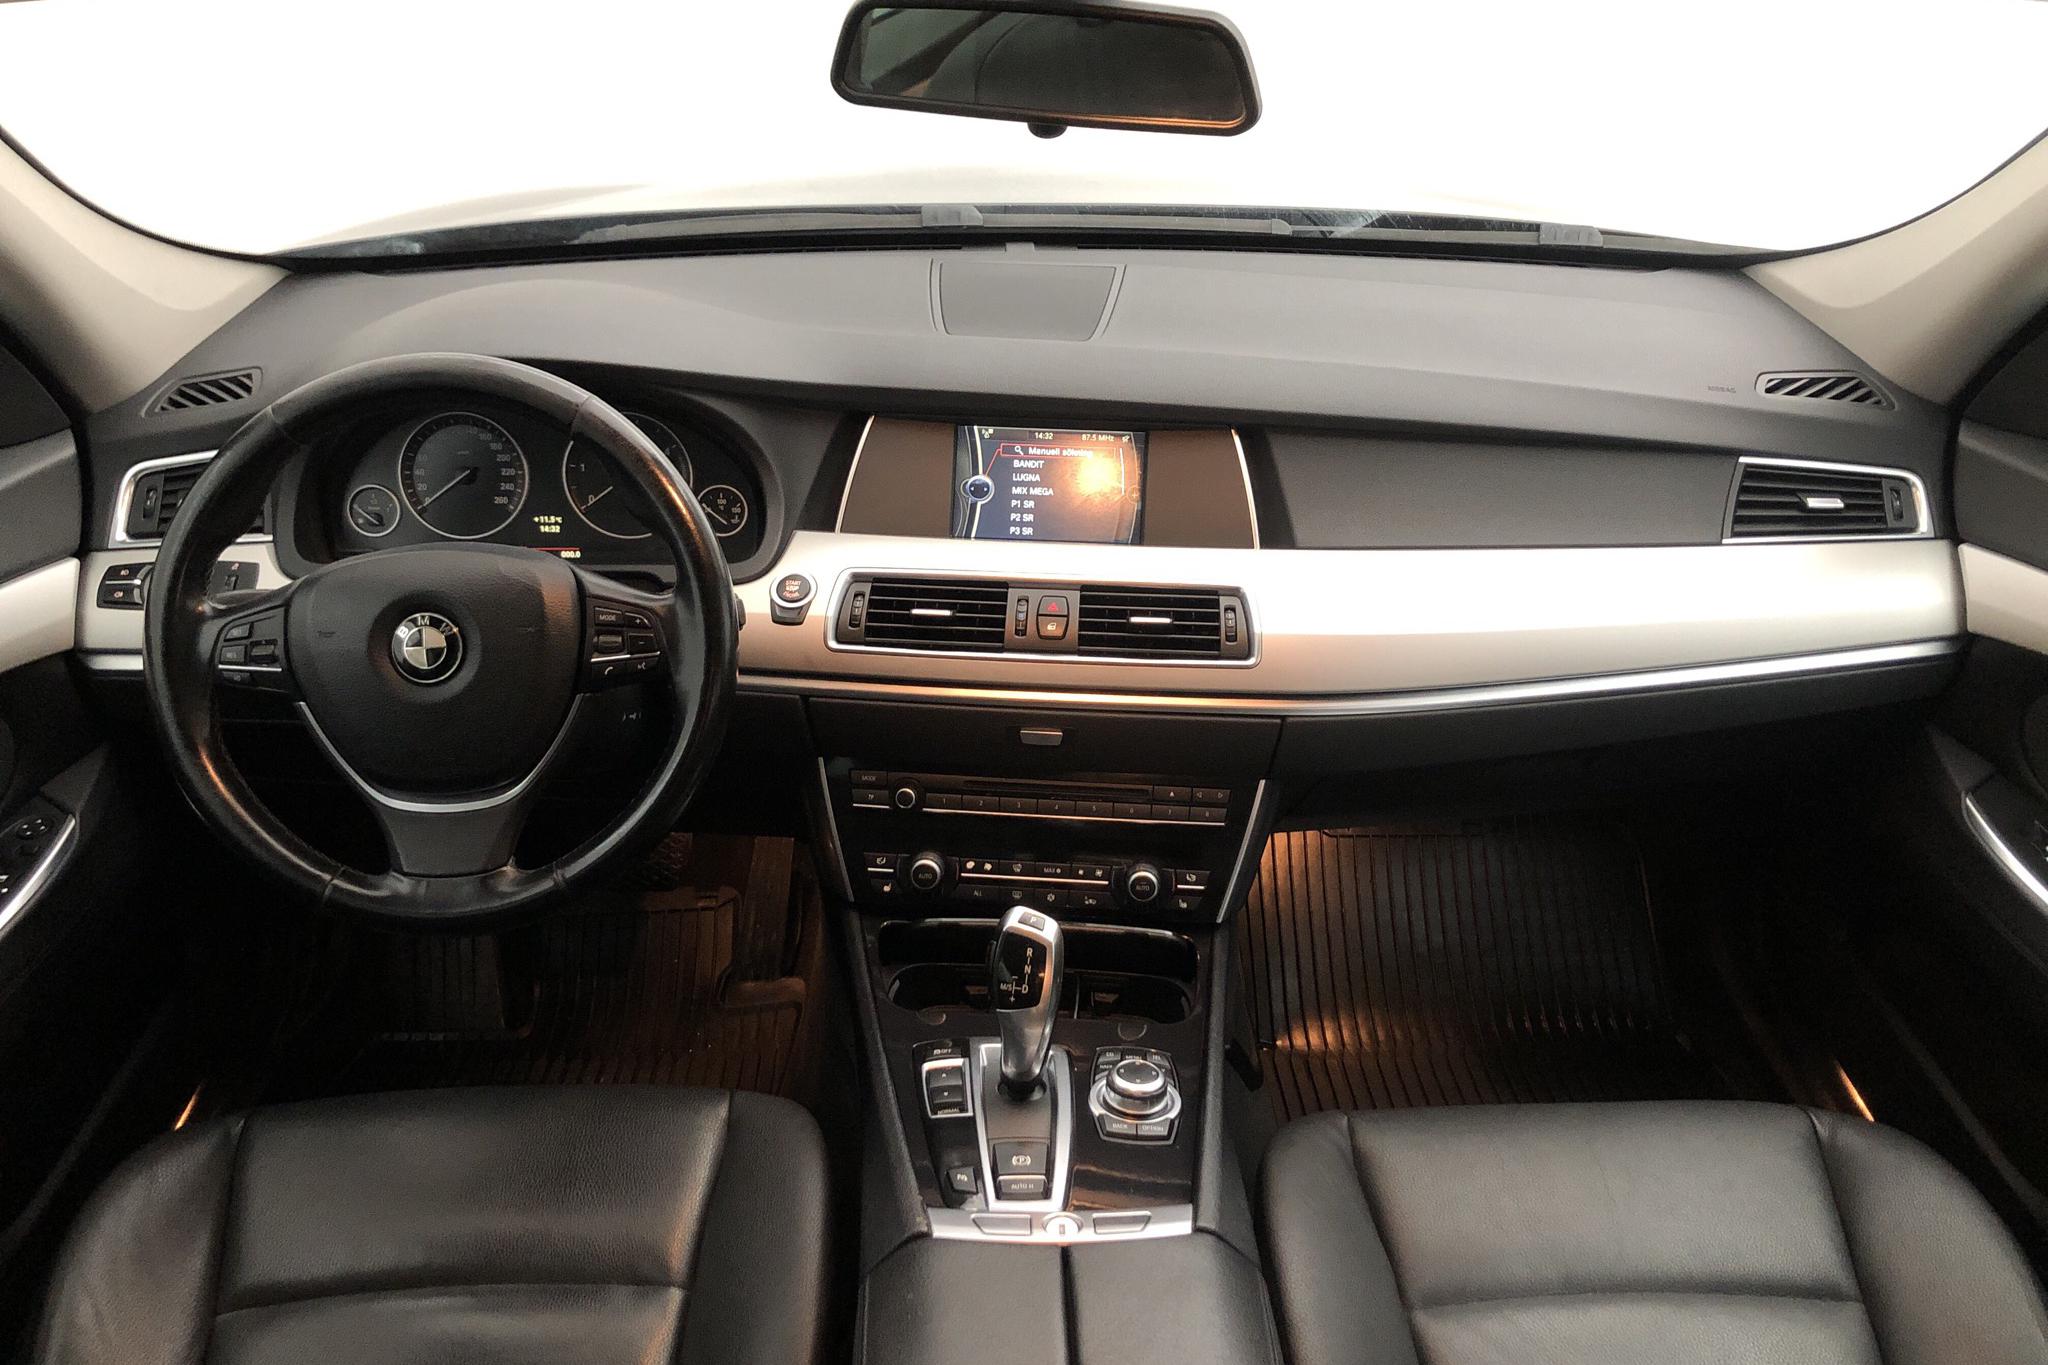 BMW 530d GT, F07 (245hk) - 160 520 km - Automatic - black - 2010